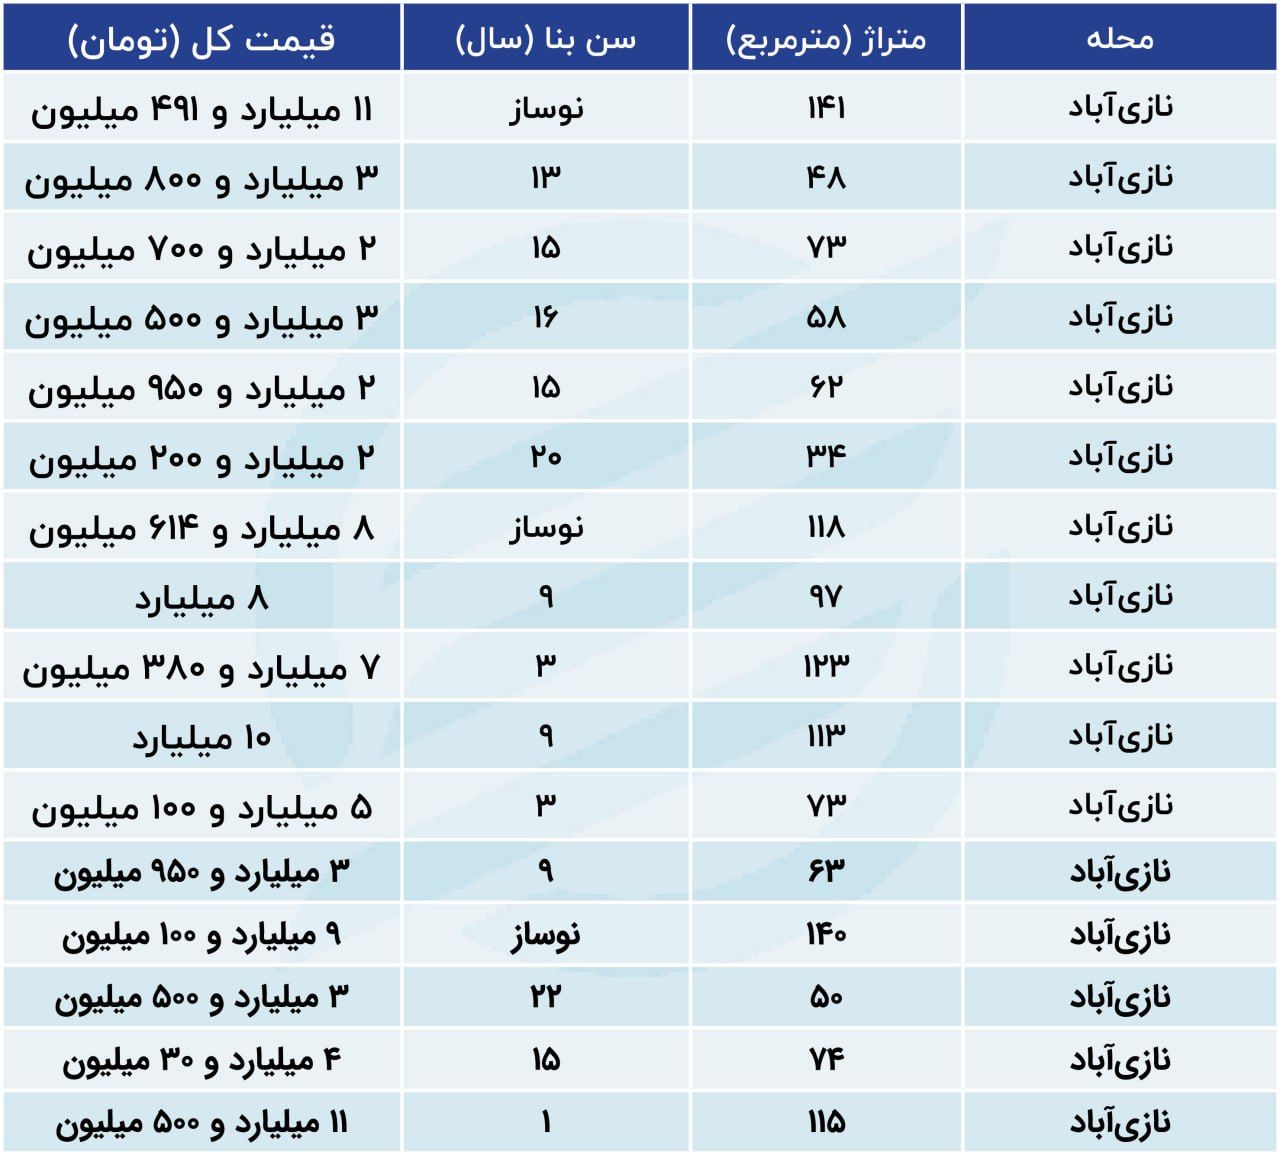 قیمت مسکن در این منطقه تهران کاهشی شد / خبر مهم برای متقاضیان خرید خانه + جدول 3